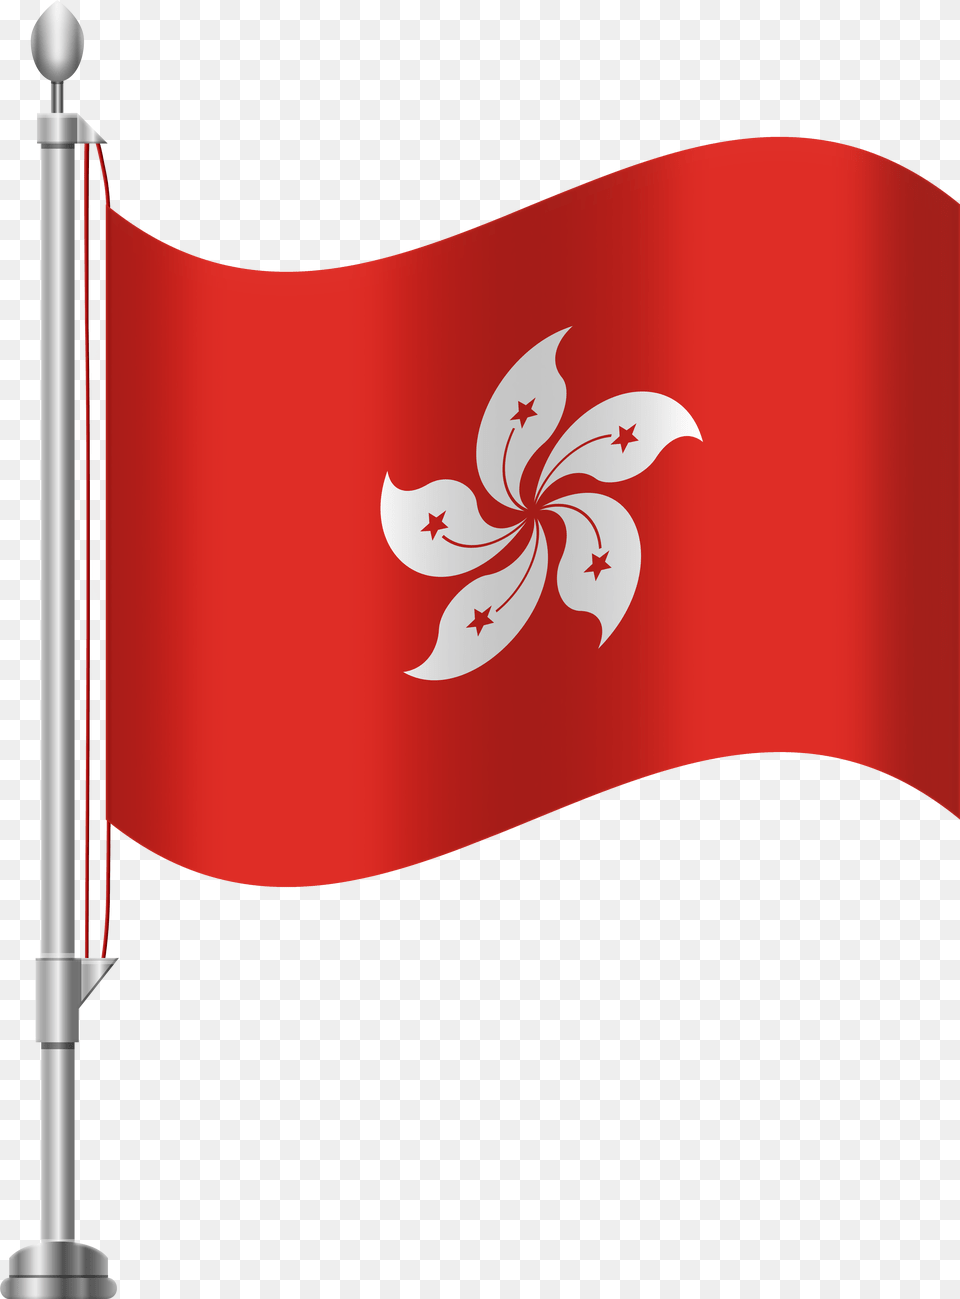 Hong Kong Flag Clip Art Clipart Image Dominican Republic Flag Clipart, Hong Kong Sar Flag Free Transparent Png